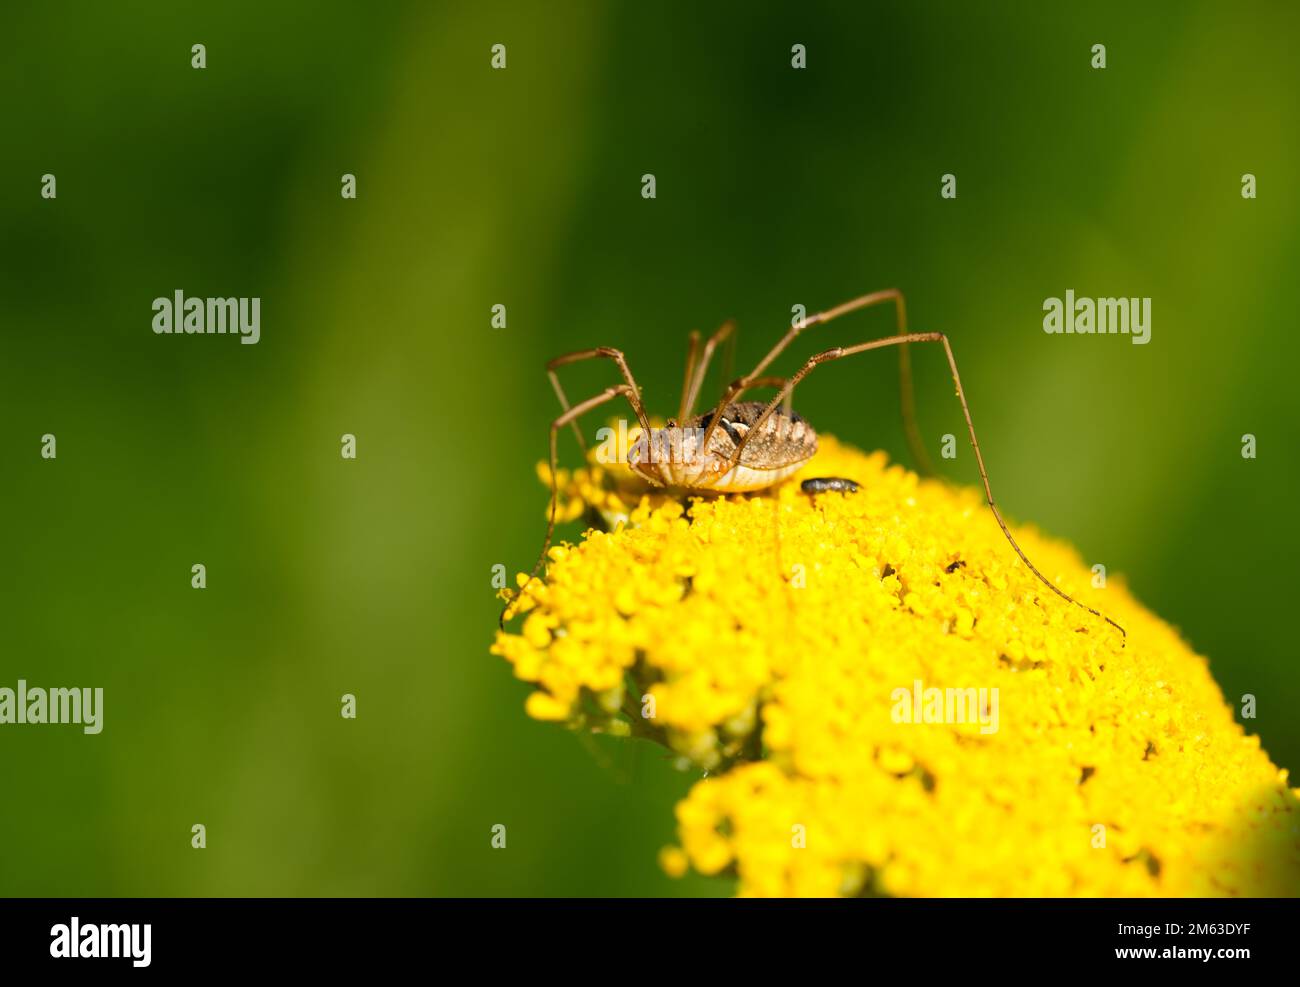 Erntemaschine auf der gelben Blume der Schafgarbe. Insektennahaufnahme vor grünem Hintergrund. Spinne mit langen, dünnen Beinen. Opilione. Stockfoto